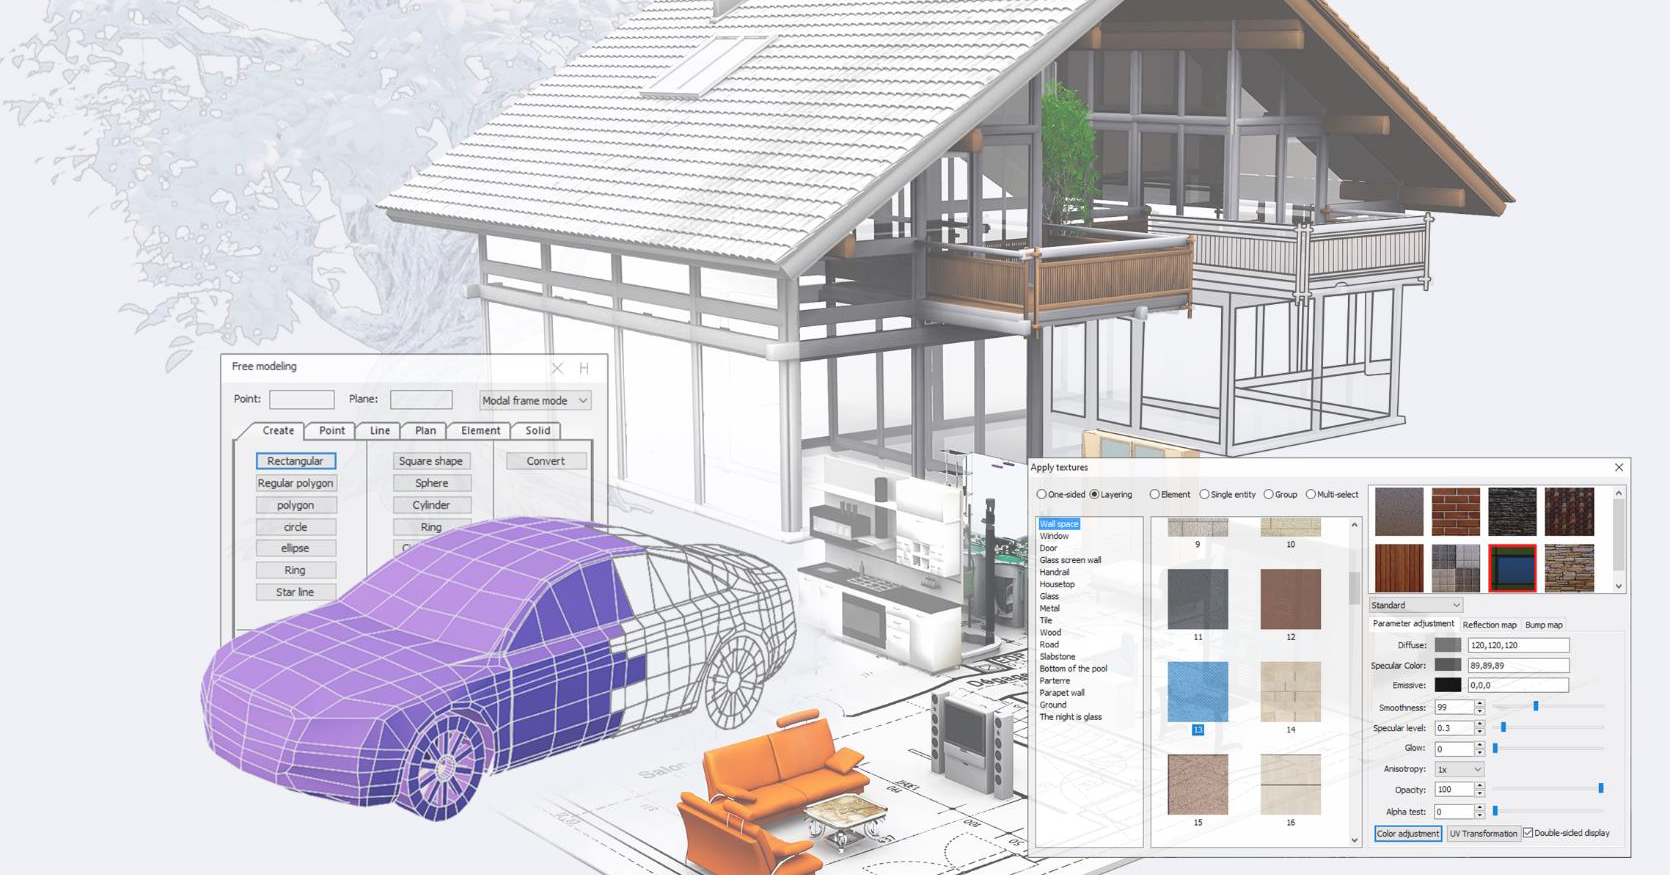 Houseplan software image